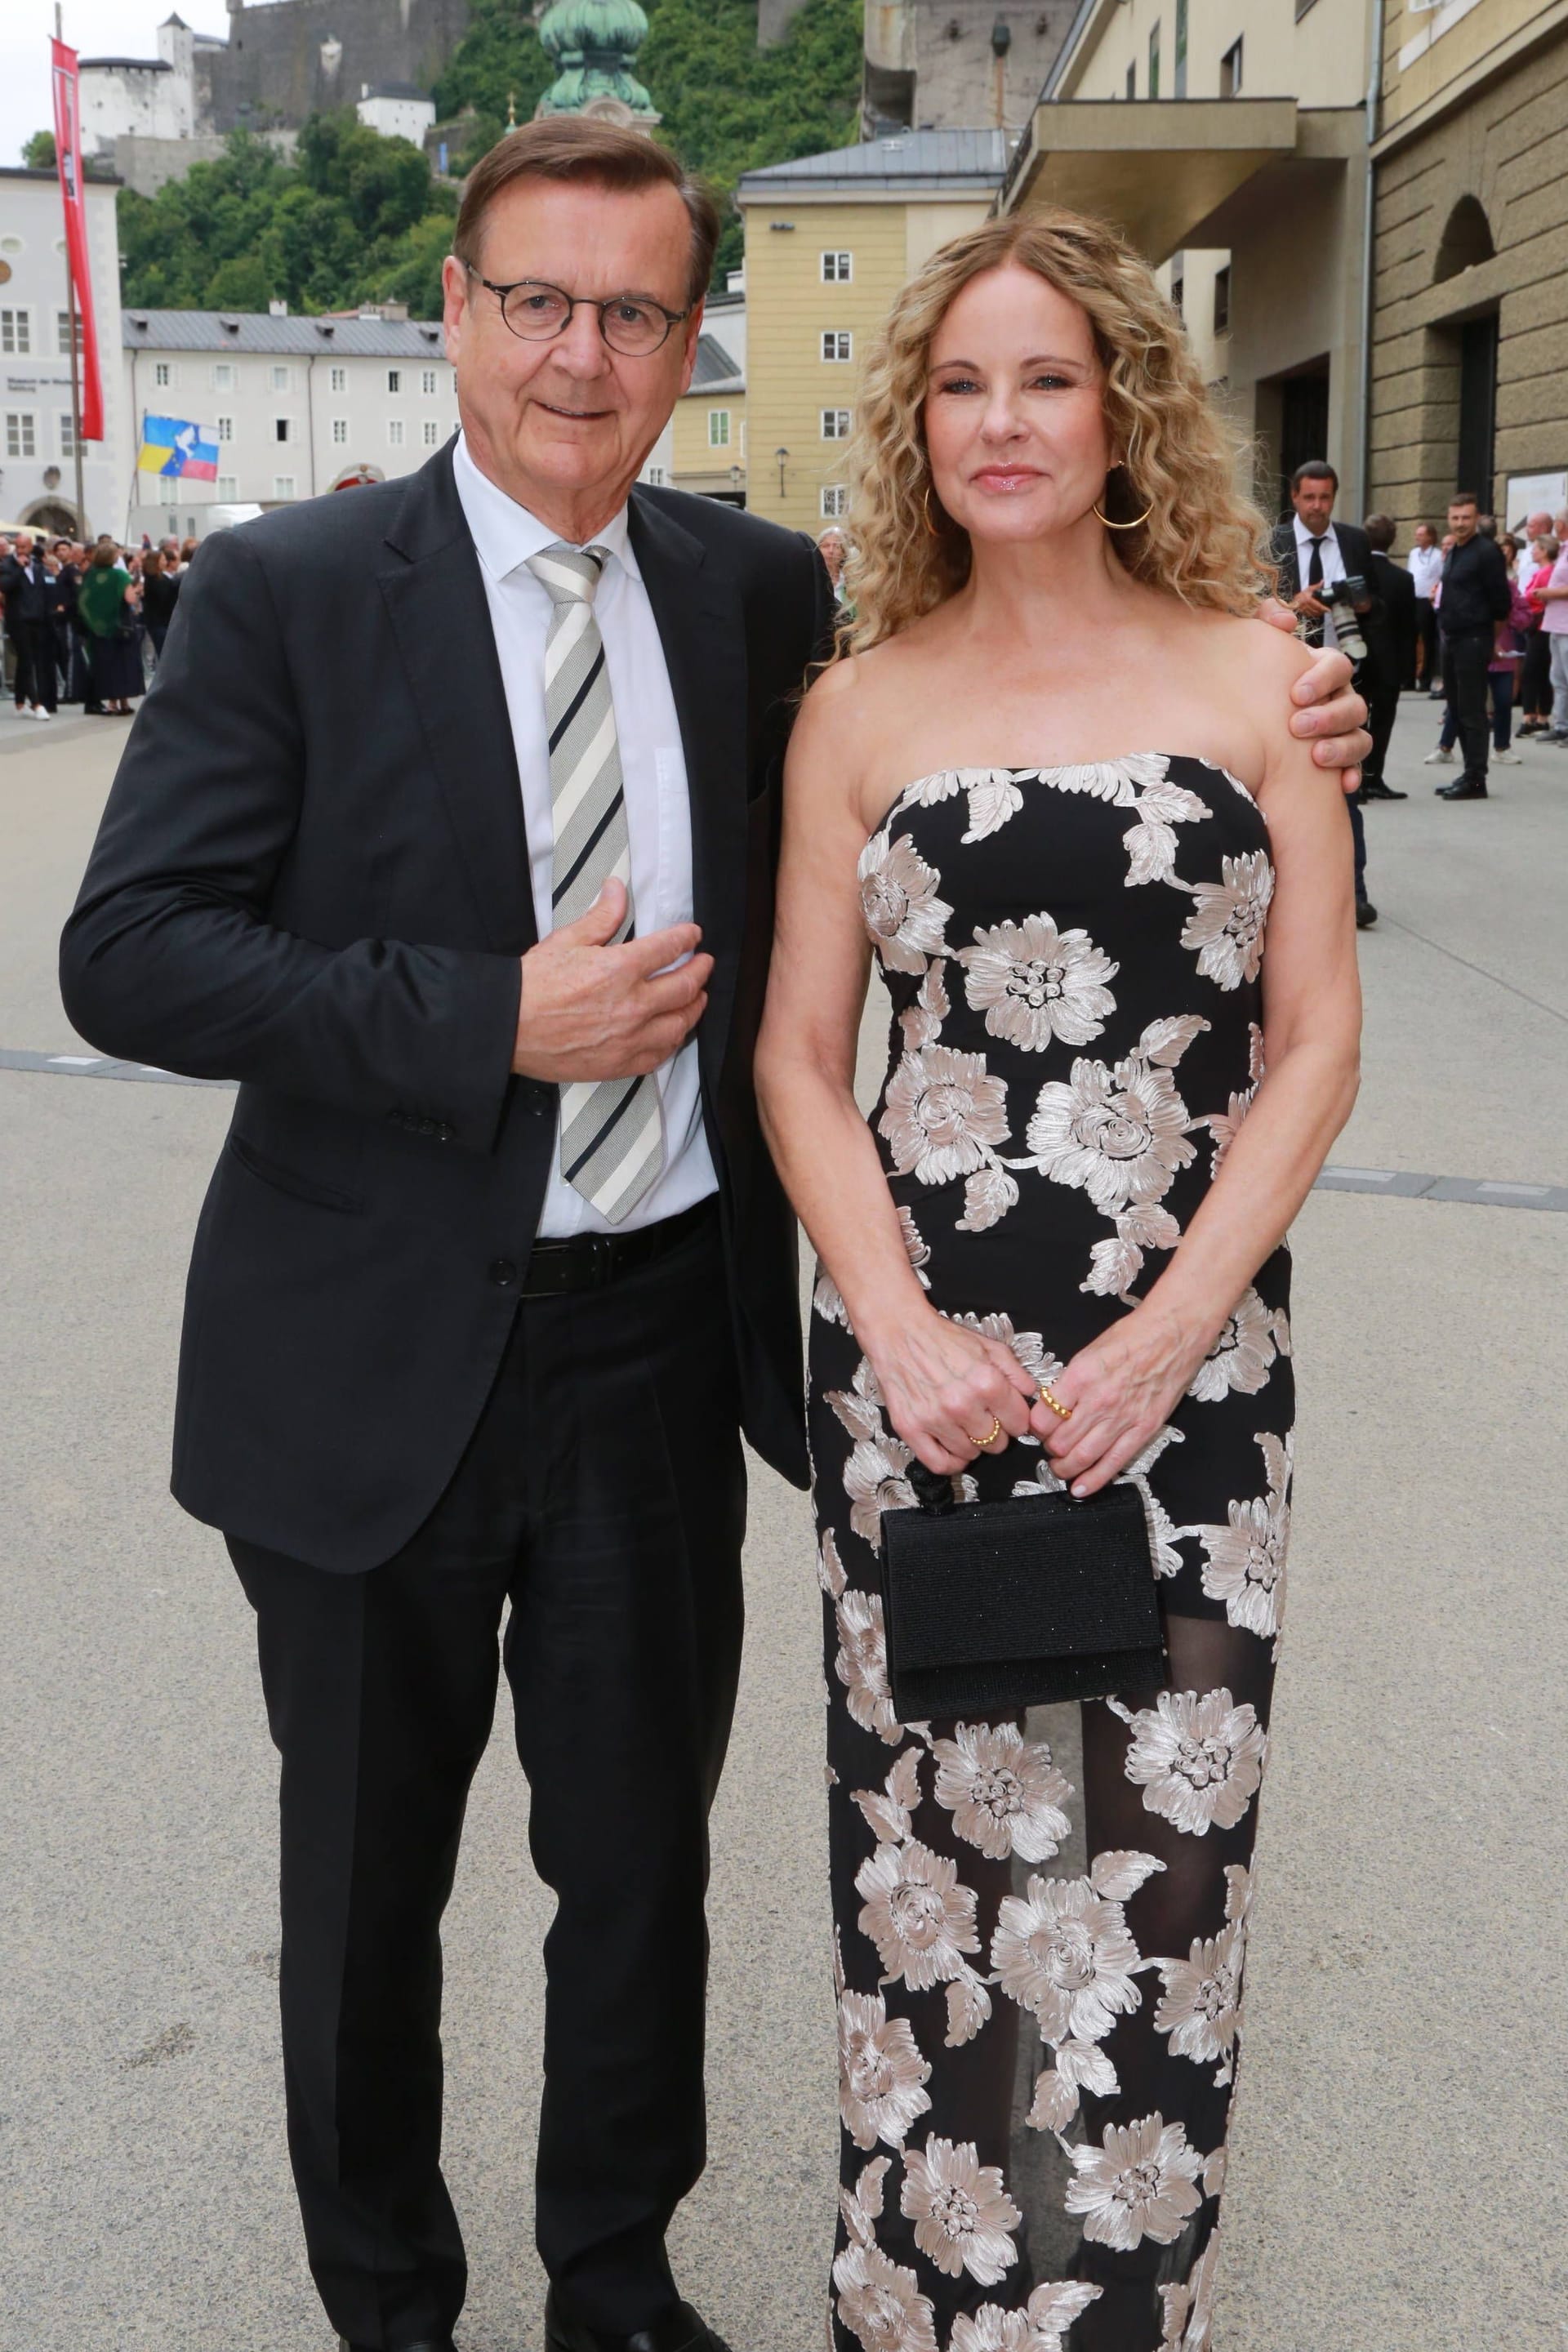 Hans Mahr und Katja Burkard posieren für die Fotografen.